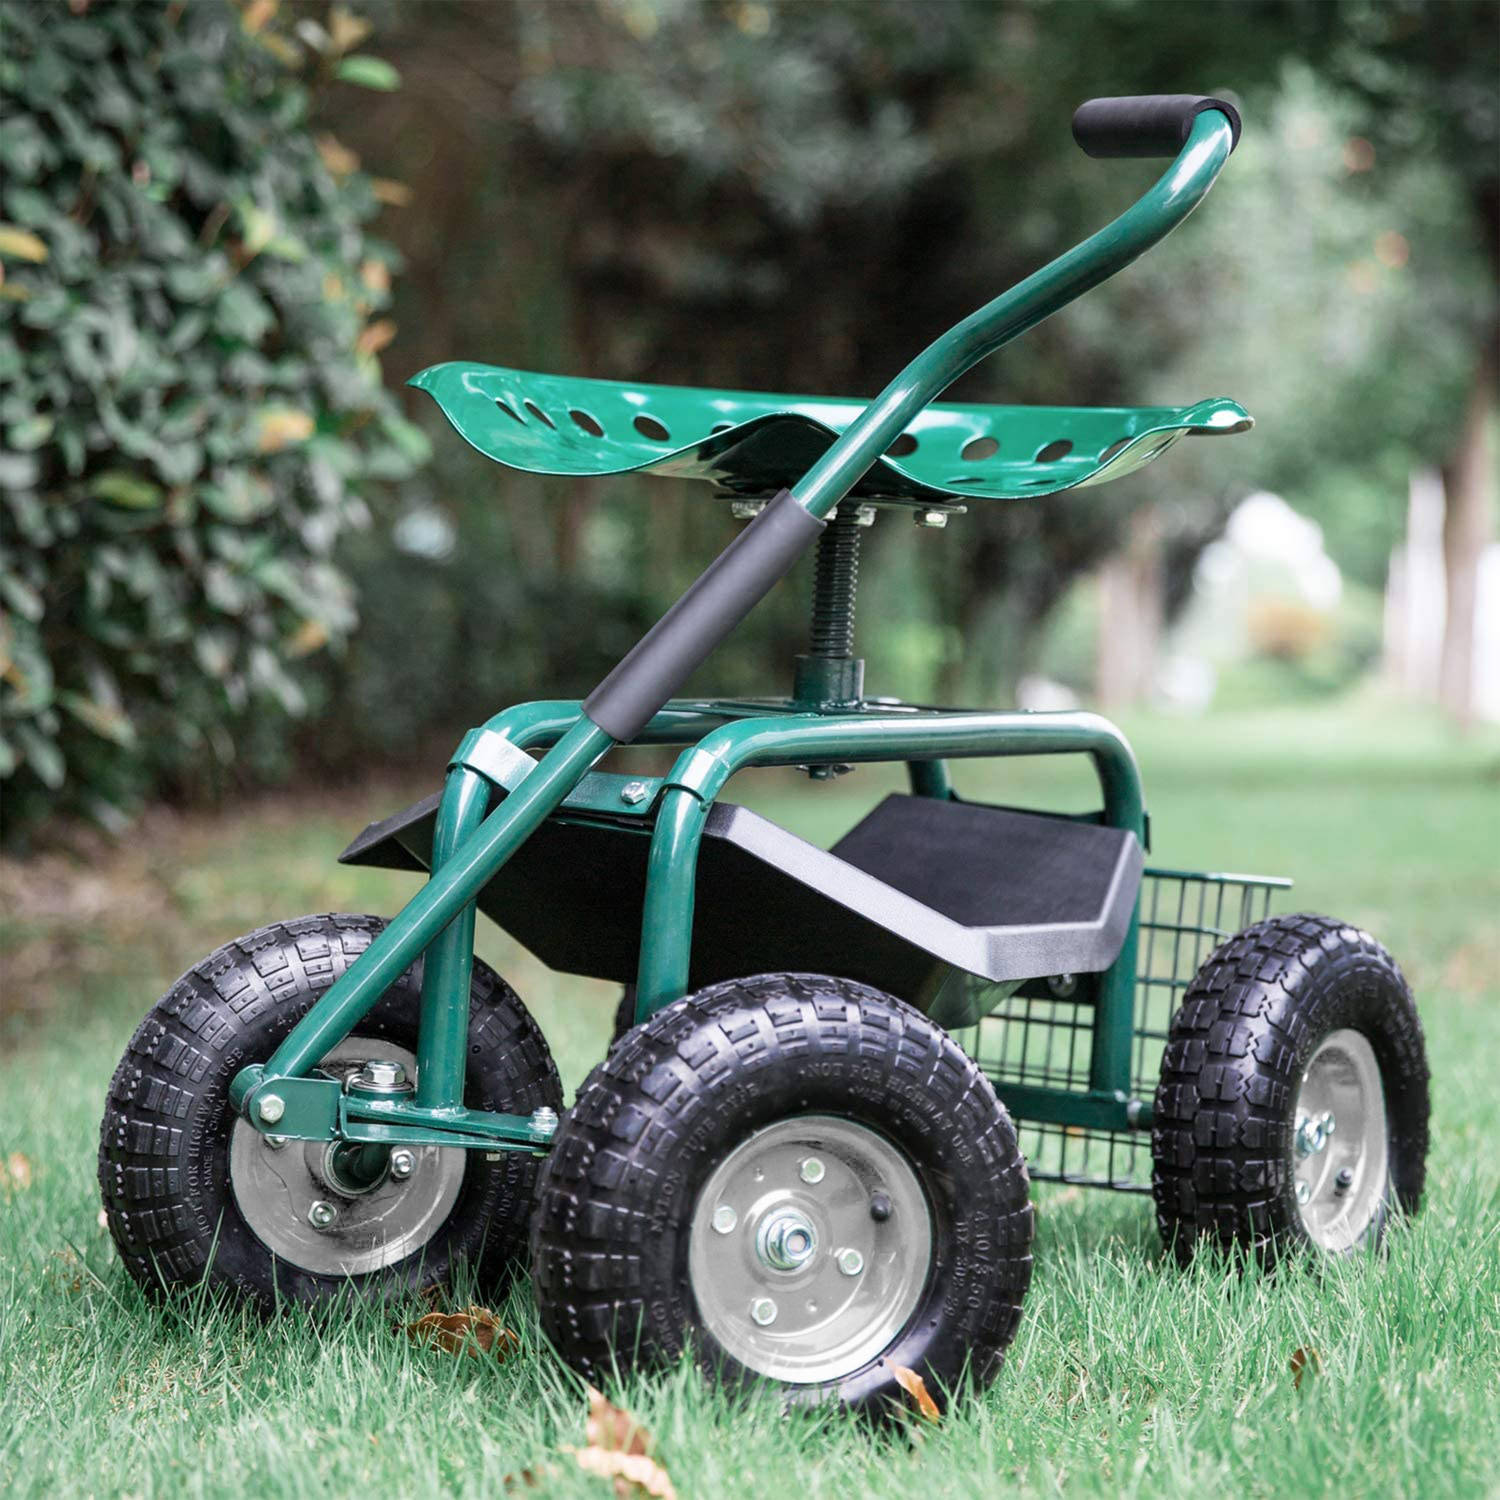 AXI AG22 Tuinkrukje op wielen voor tuin in Groen / Knielkruk van metaal maximale van 150 kg | Blokker